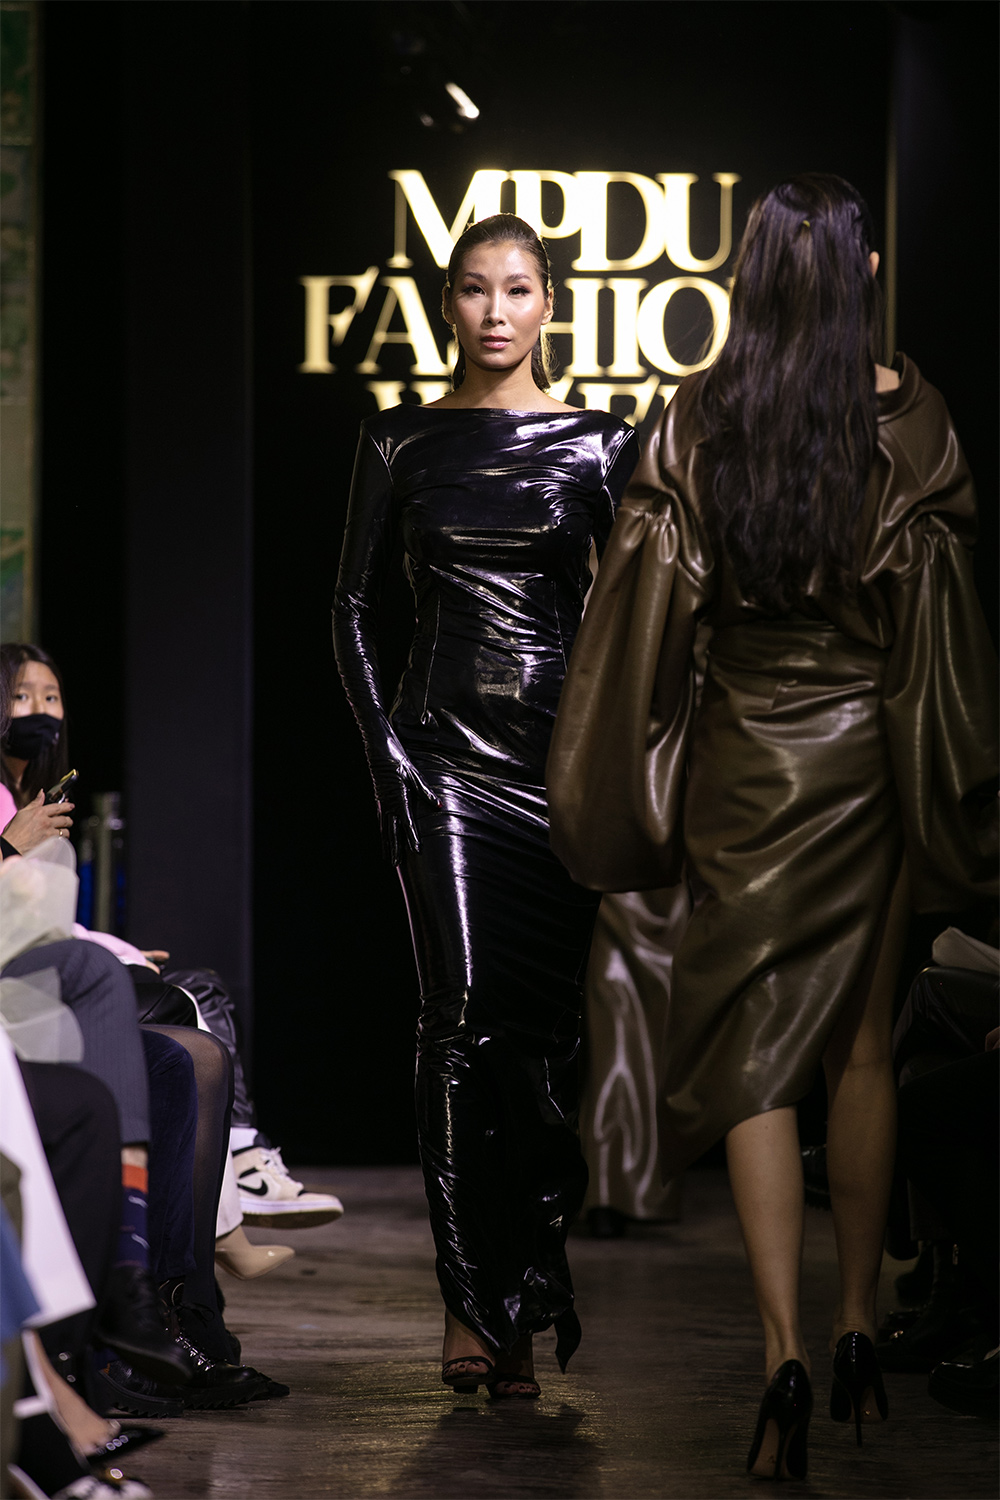 MPDU Fashion Week: KADR брэндийн "Ялгаварлан гадуурхалтыг зогсооцгооё" уриатай цуглуулга (фото 18)